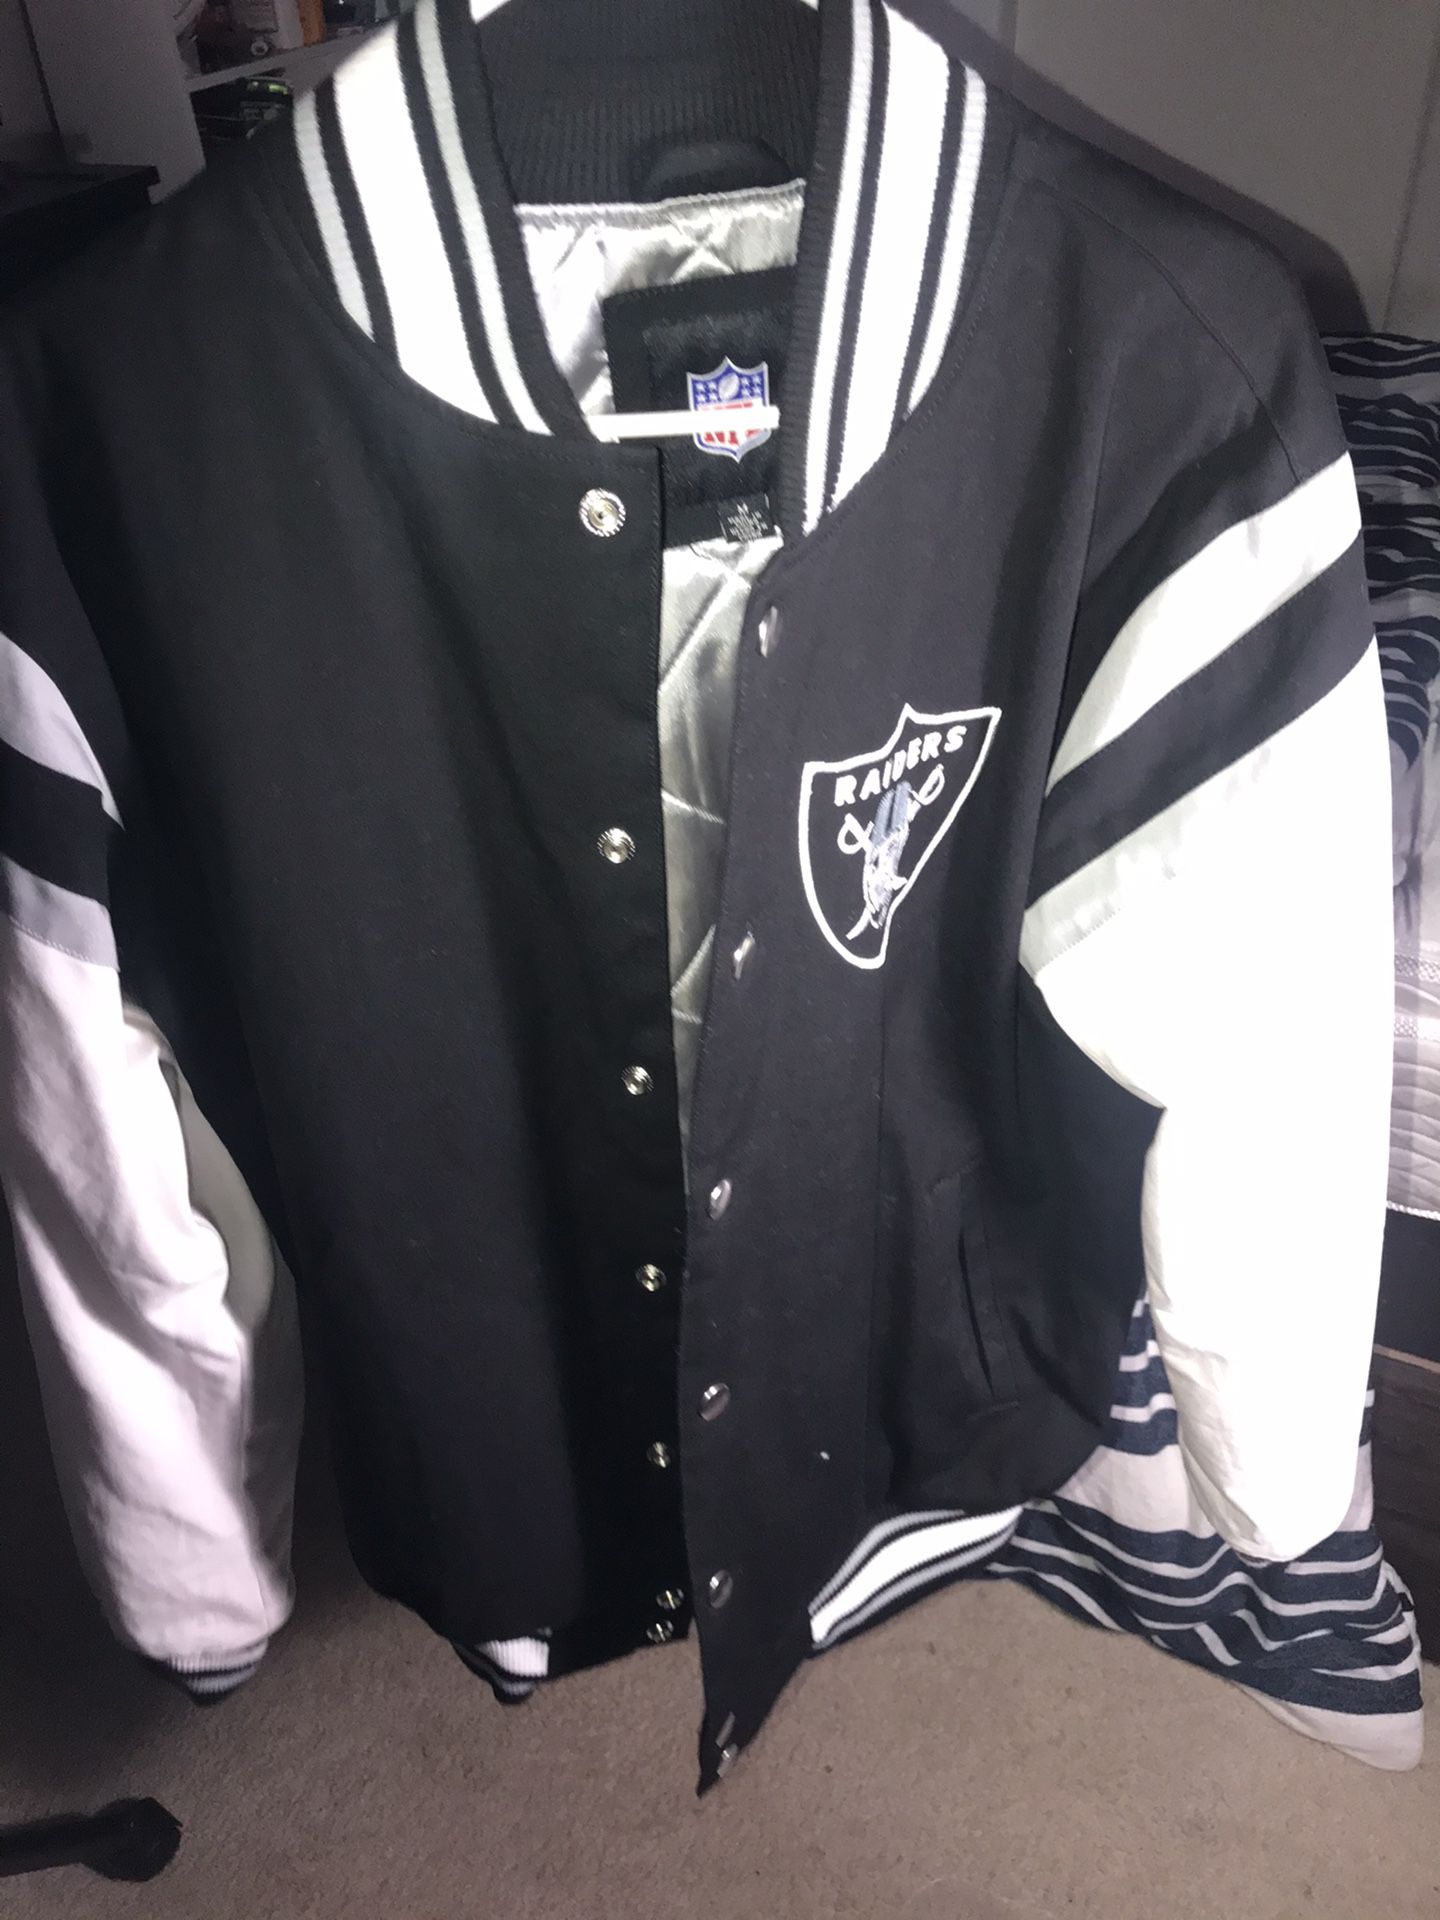 Raiders varsity jacket